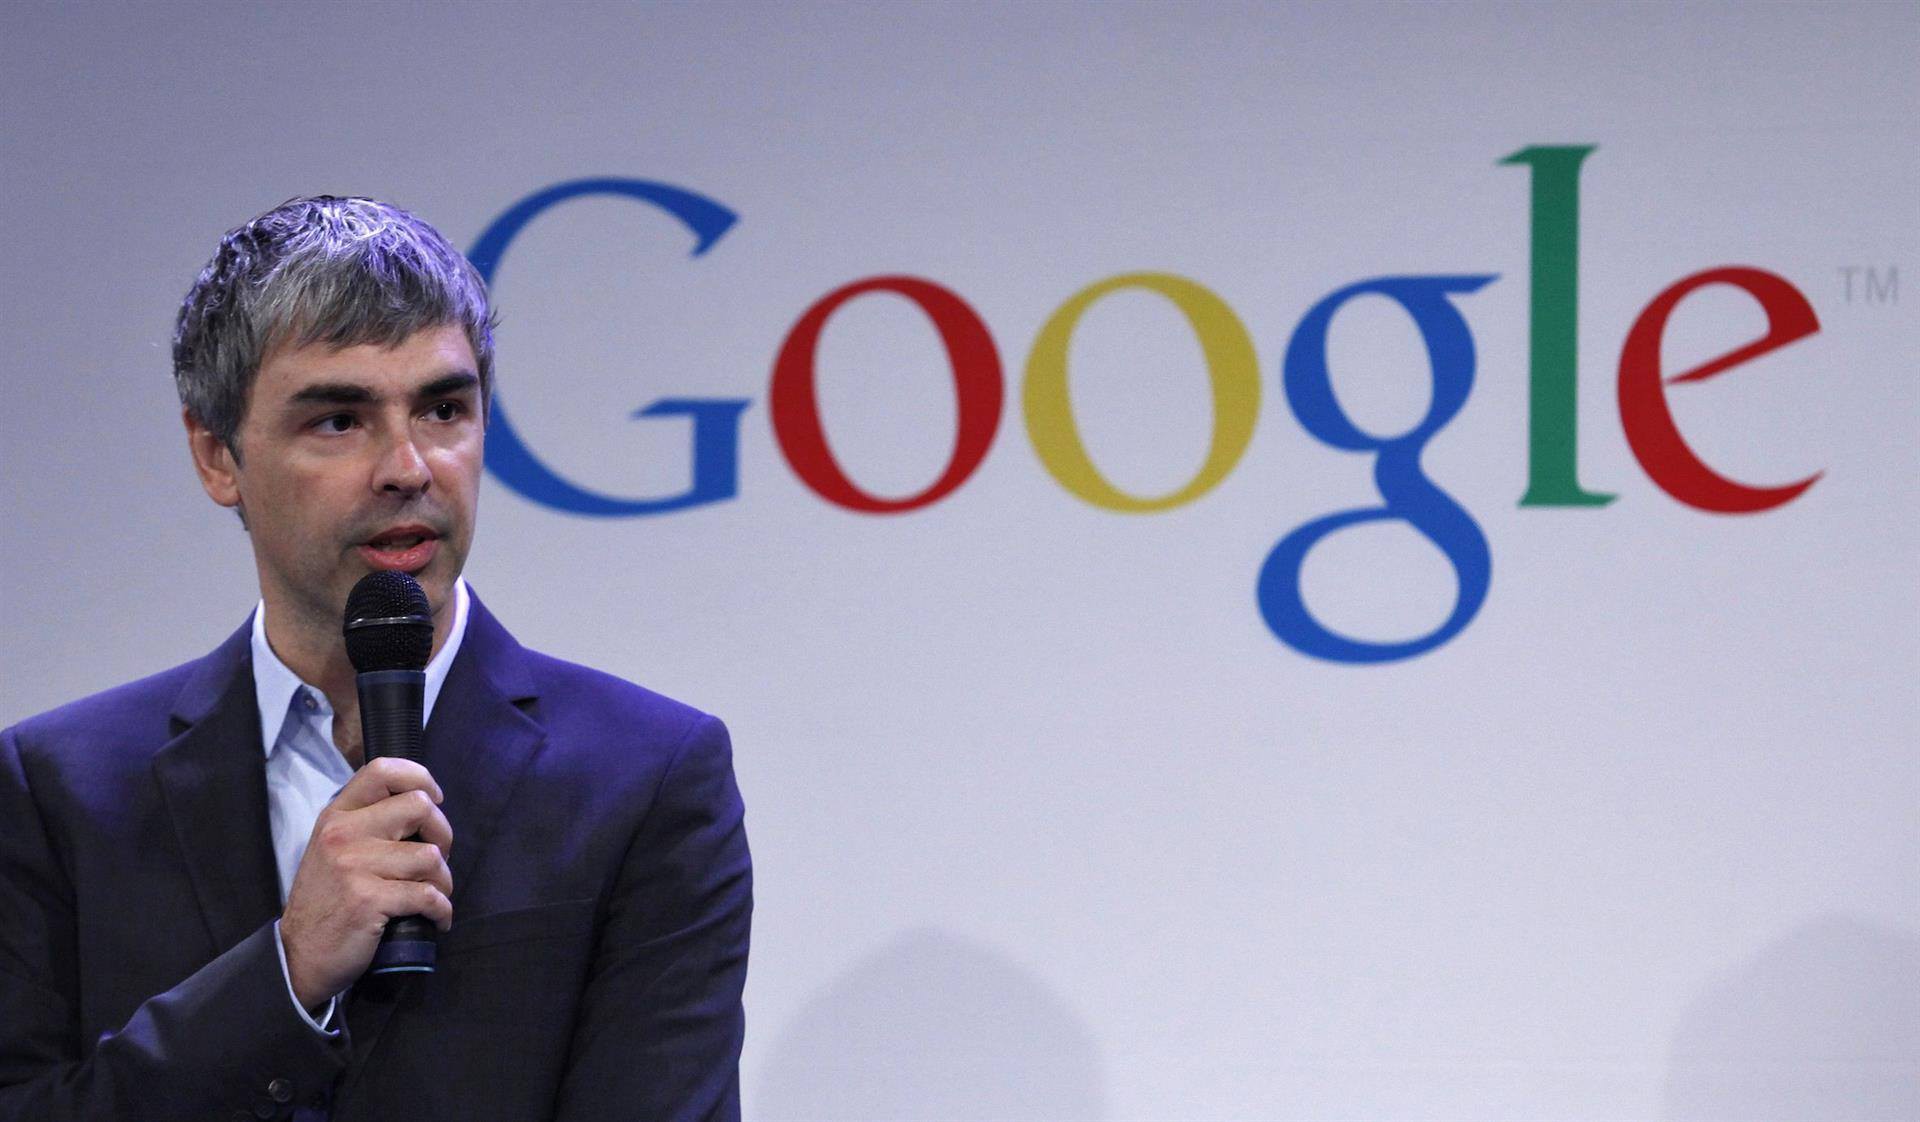 ‘Google’-ын үүсгэн байгуулагч Ларри Пэйжийн амжилтын түүх